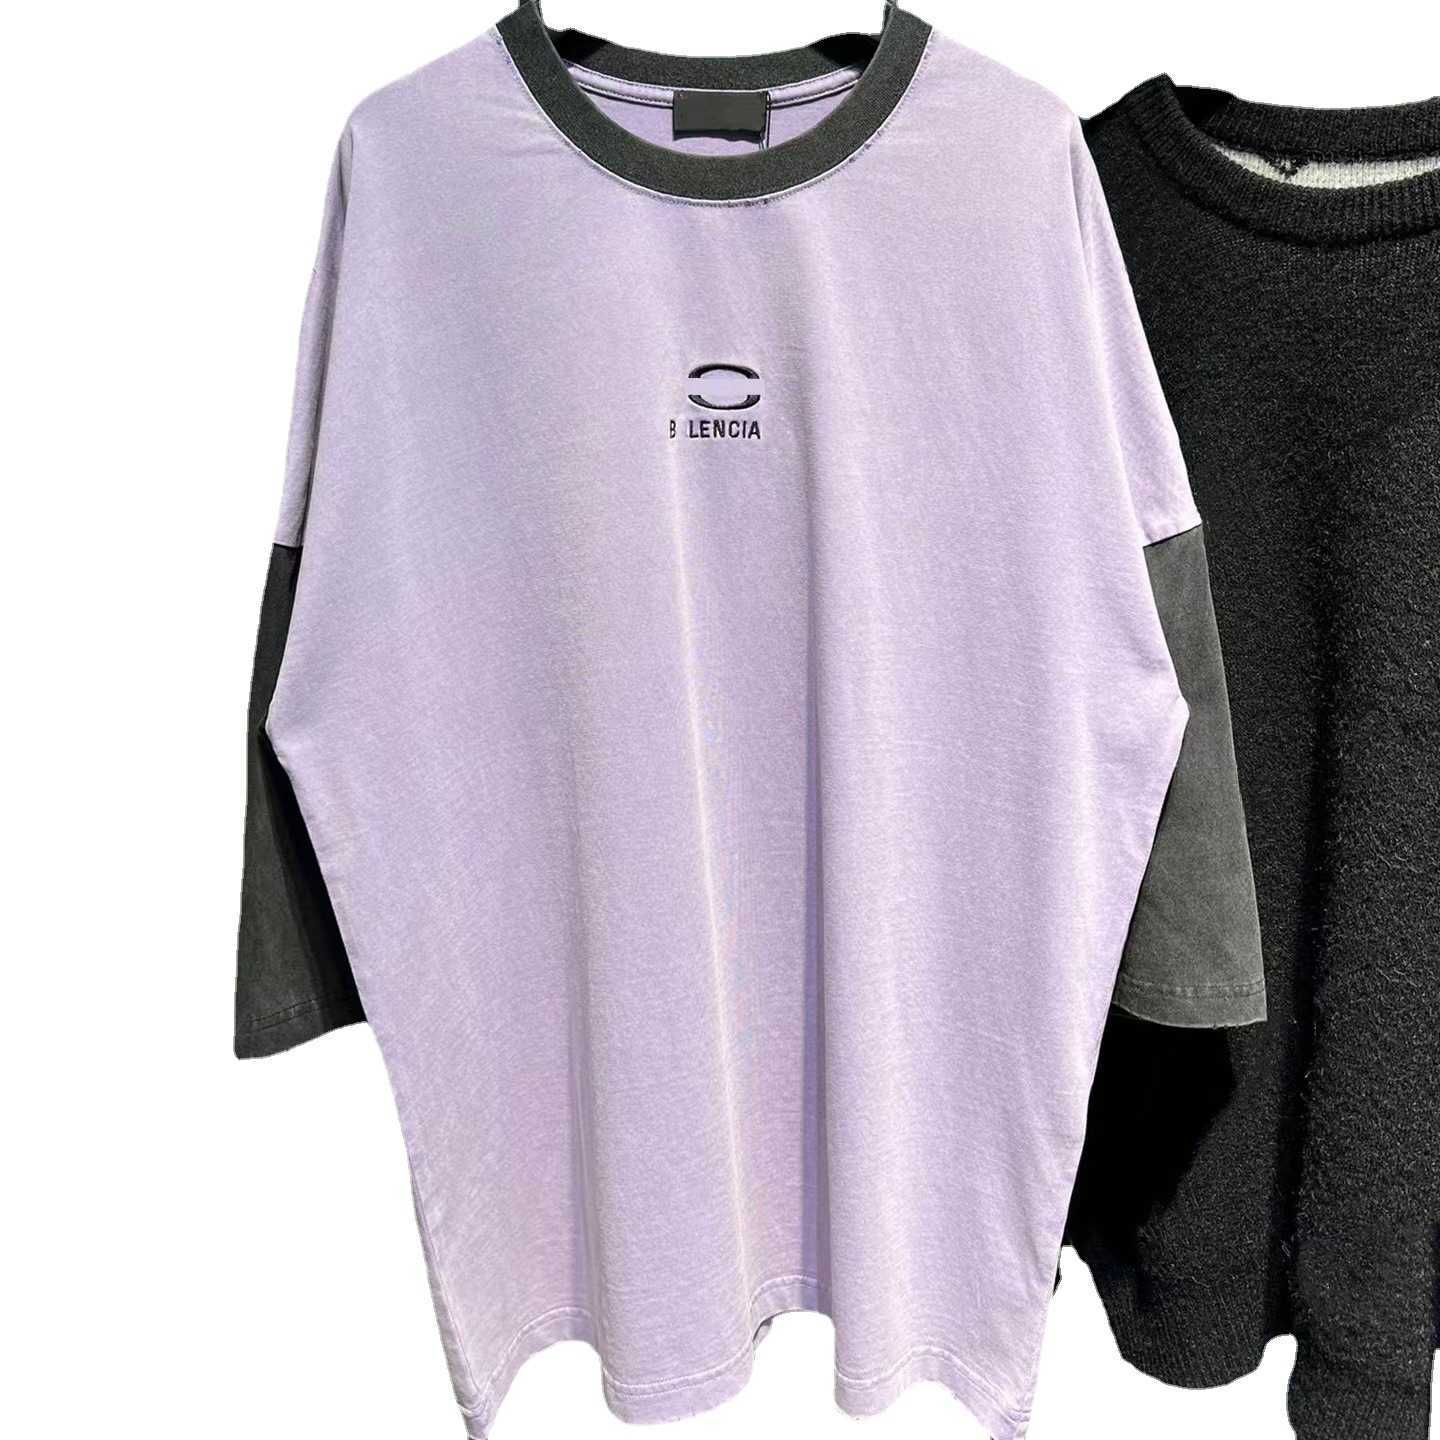 Roupas femininas de grife 20% de desconto Diferenciar mercado High Edition Família bordada no pescoço redondo de manga comprida camiseta simples unissex simples